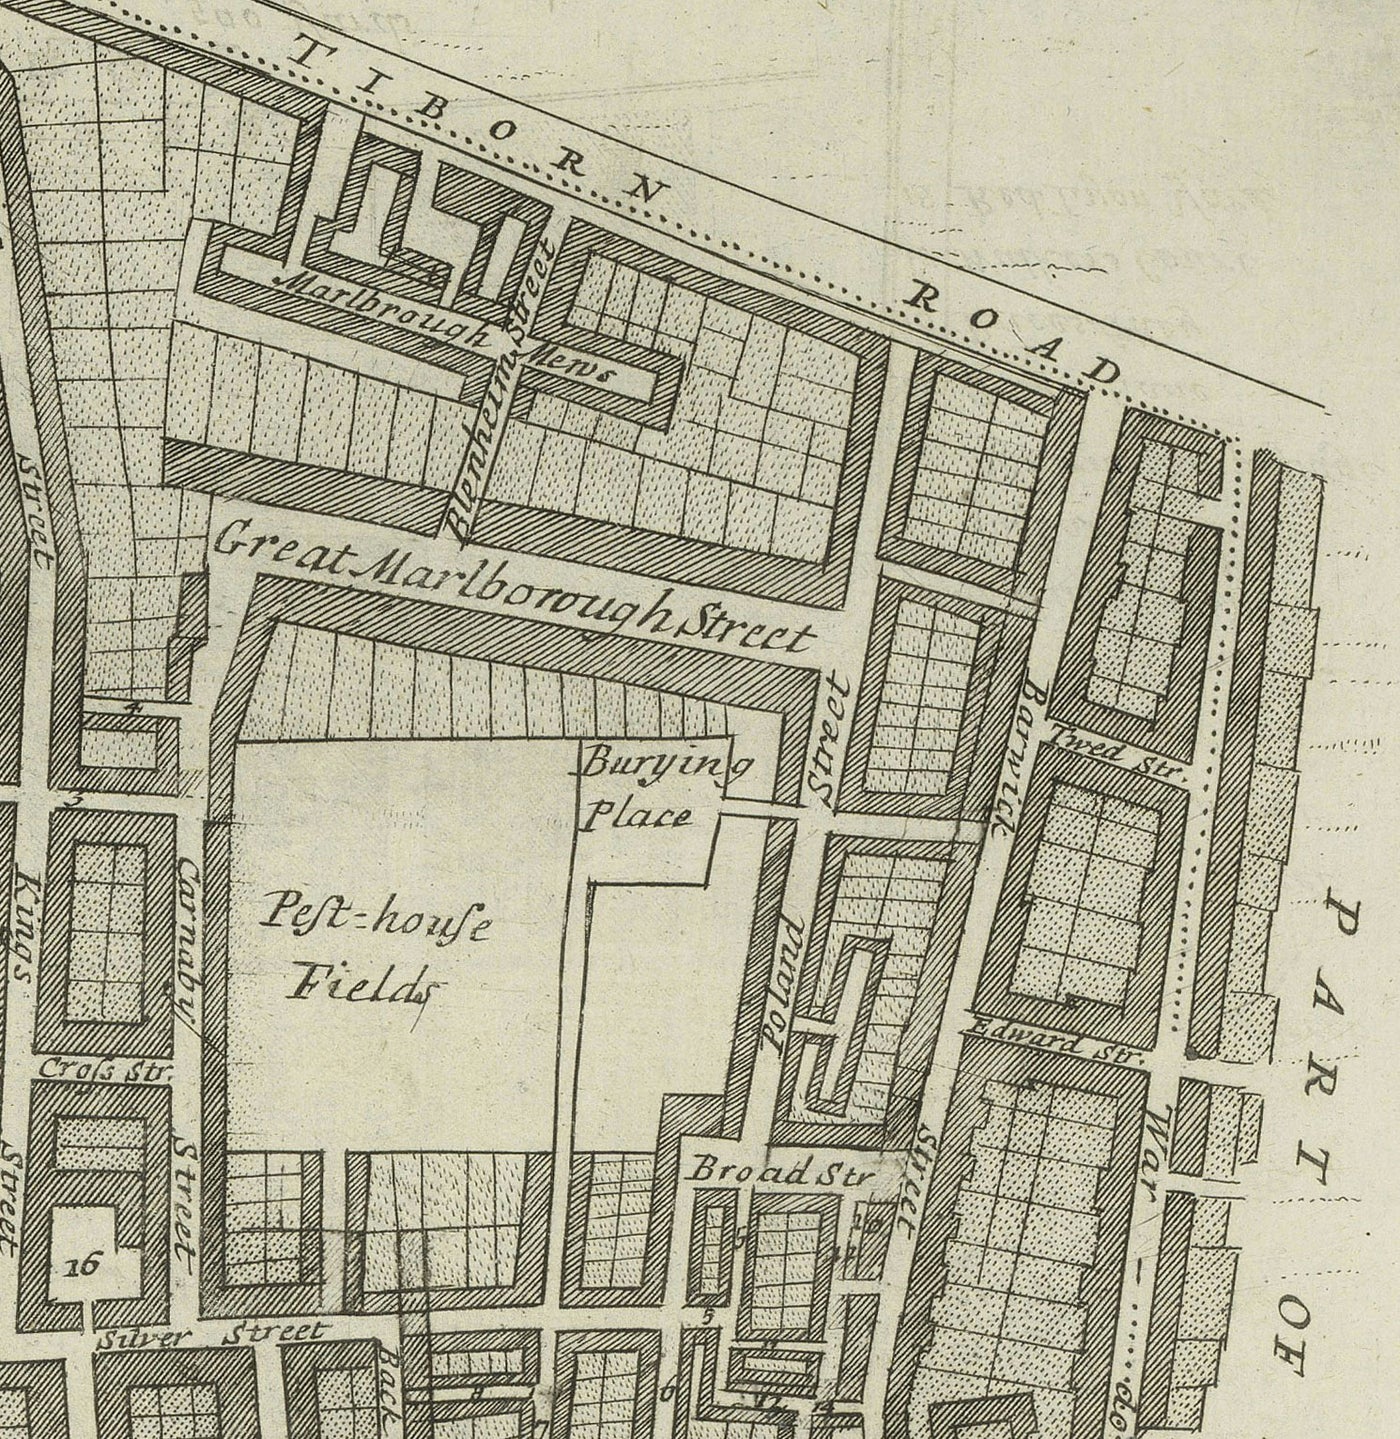 Ancienne carte de la paroisse de St James, 1720 par Strype et Stow - Londres, Piccadilly, St James's Square, Pall Mall, Westminster